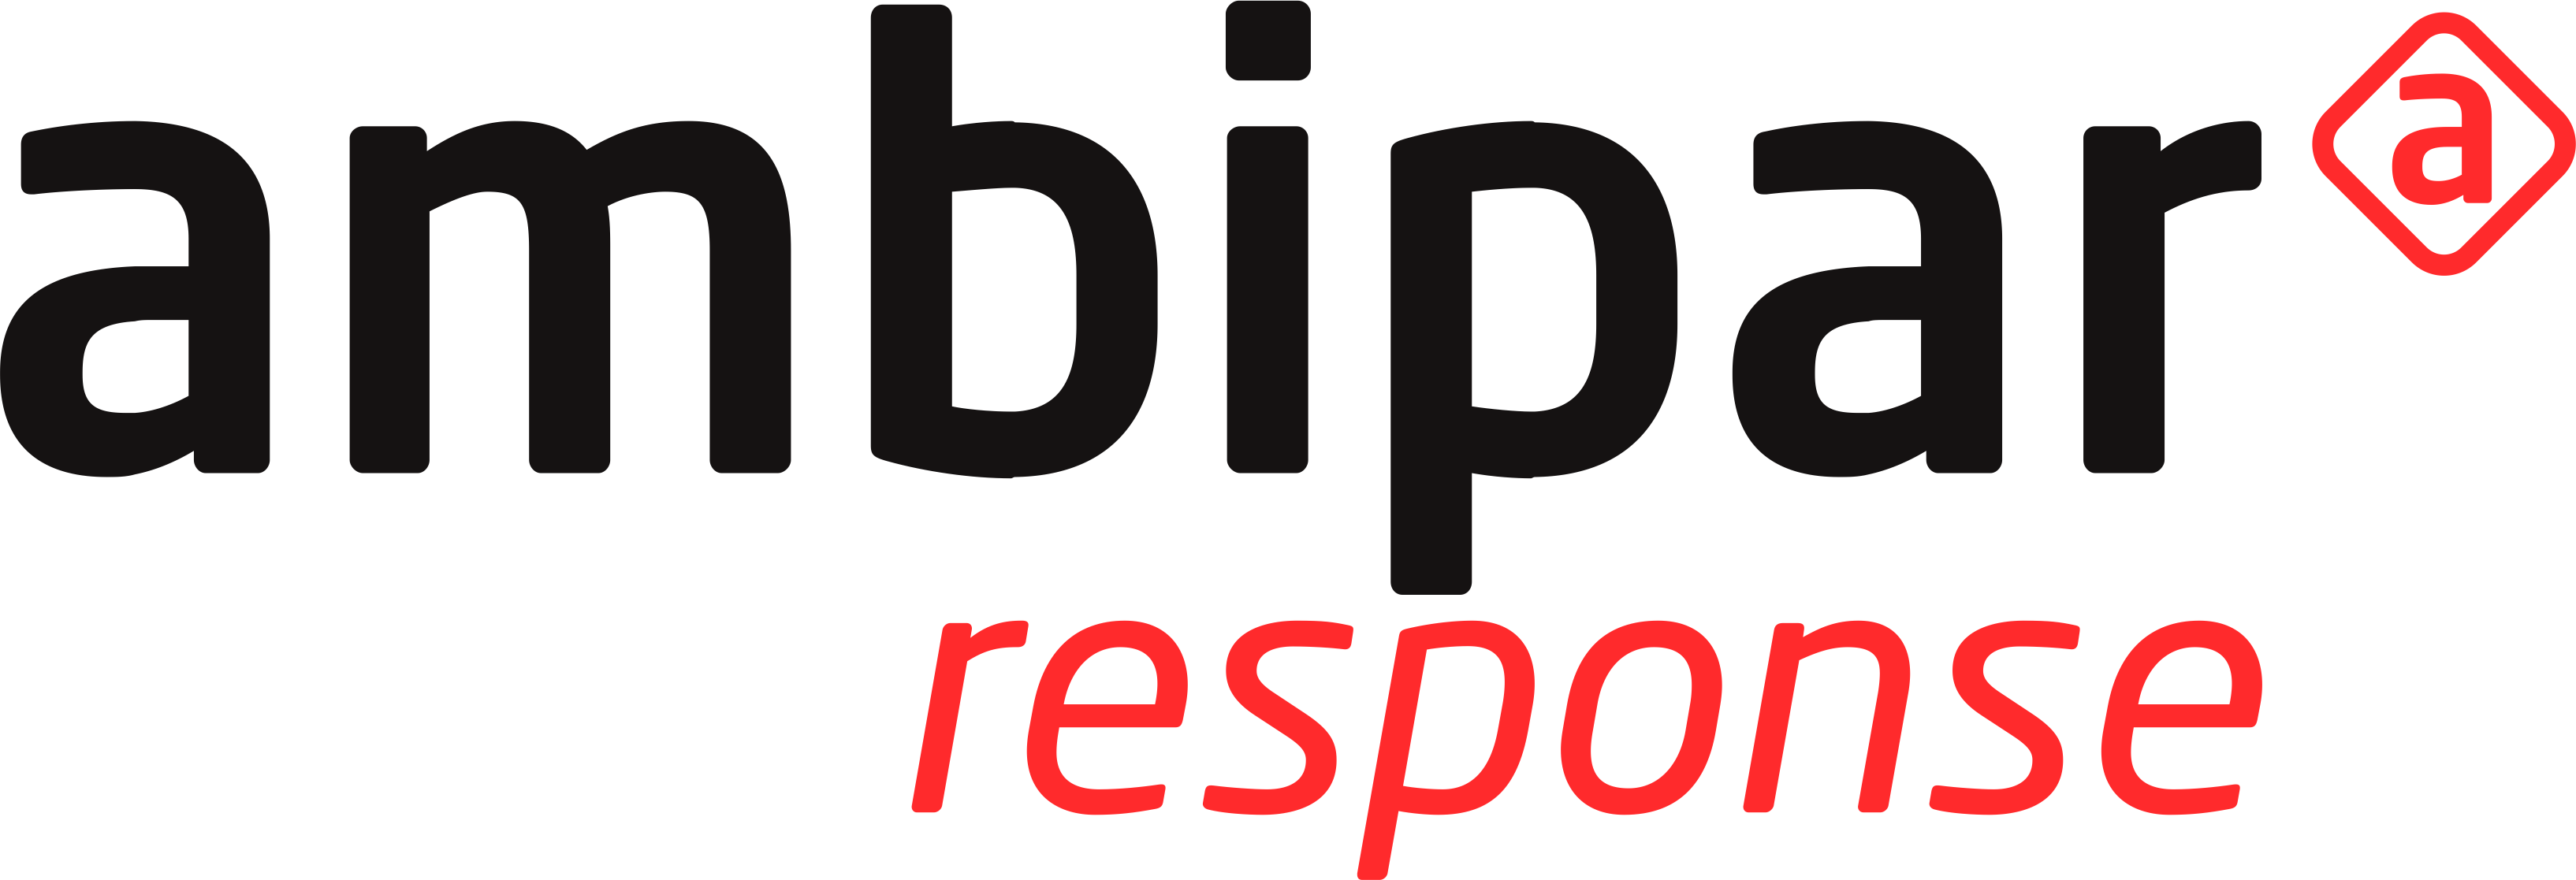 Ambipar Response OSE